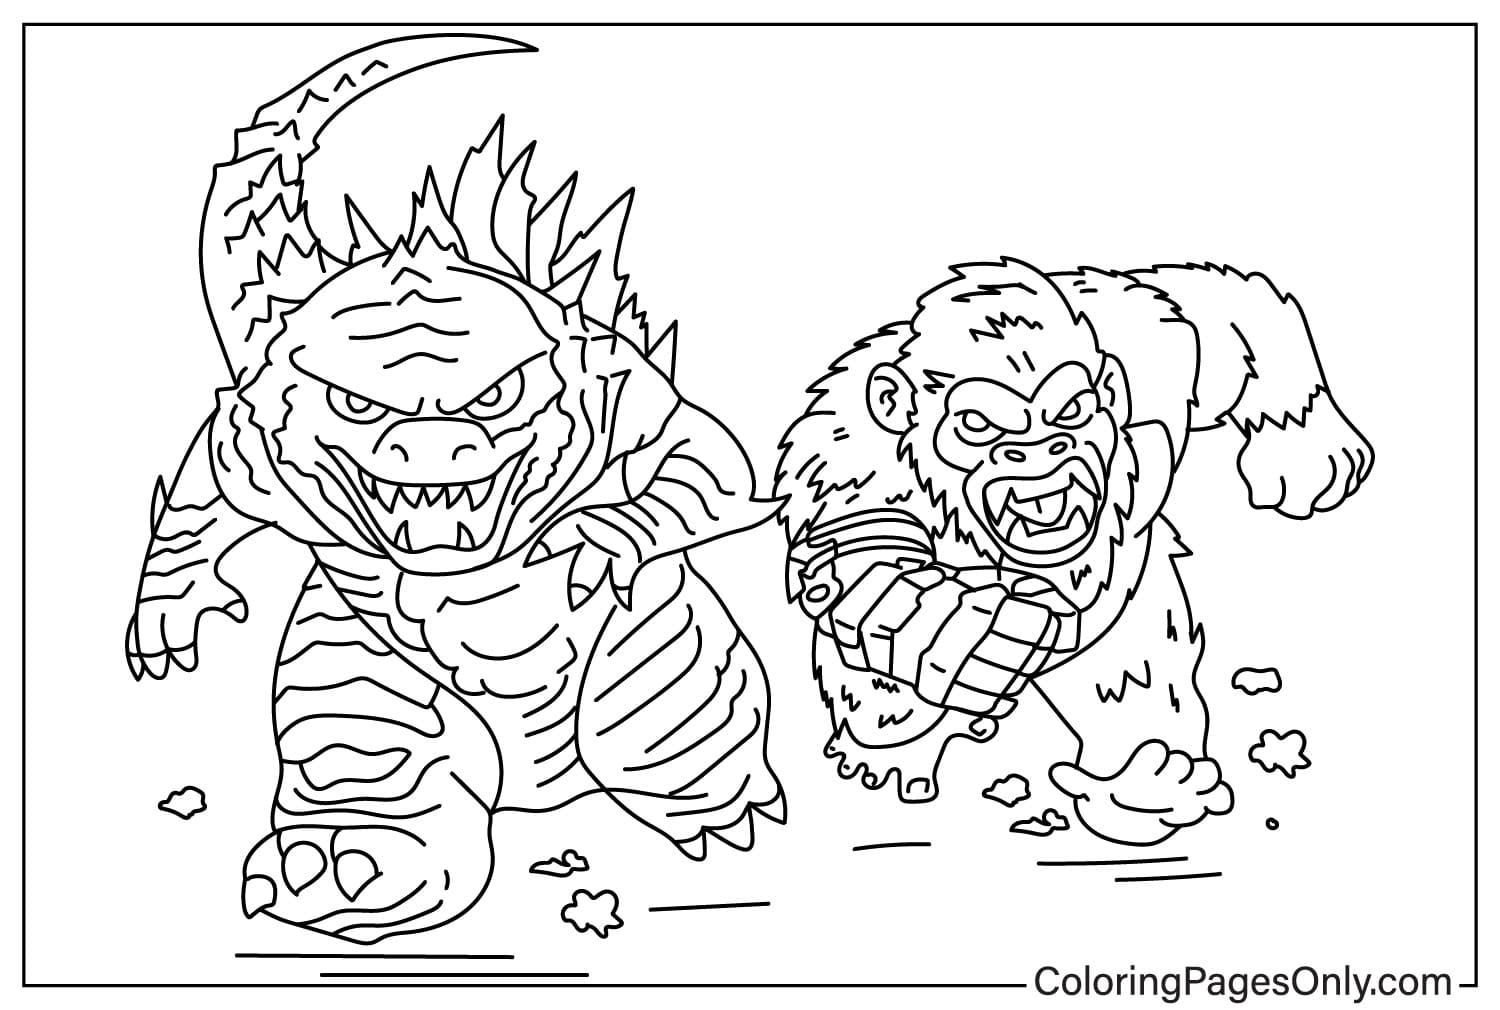 Godzilla x Kong- صفحة تلوين الإمبراطورية الجديدة للأطفال من Godzilla x Kong: الإمبراطورية الجديدة